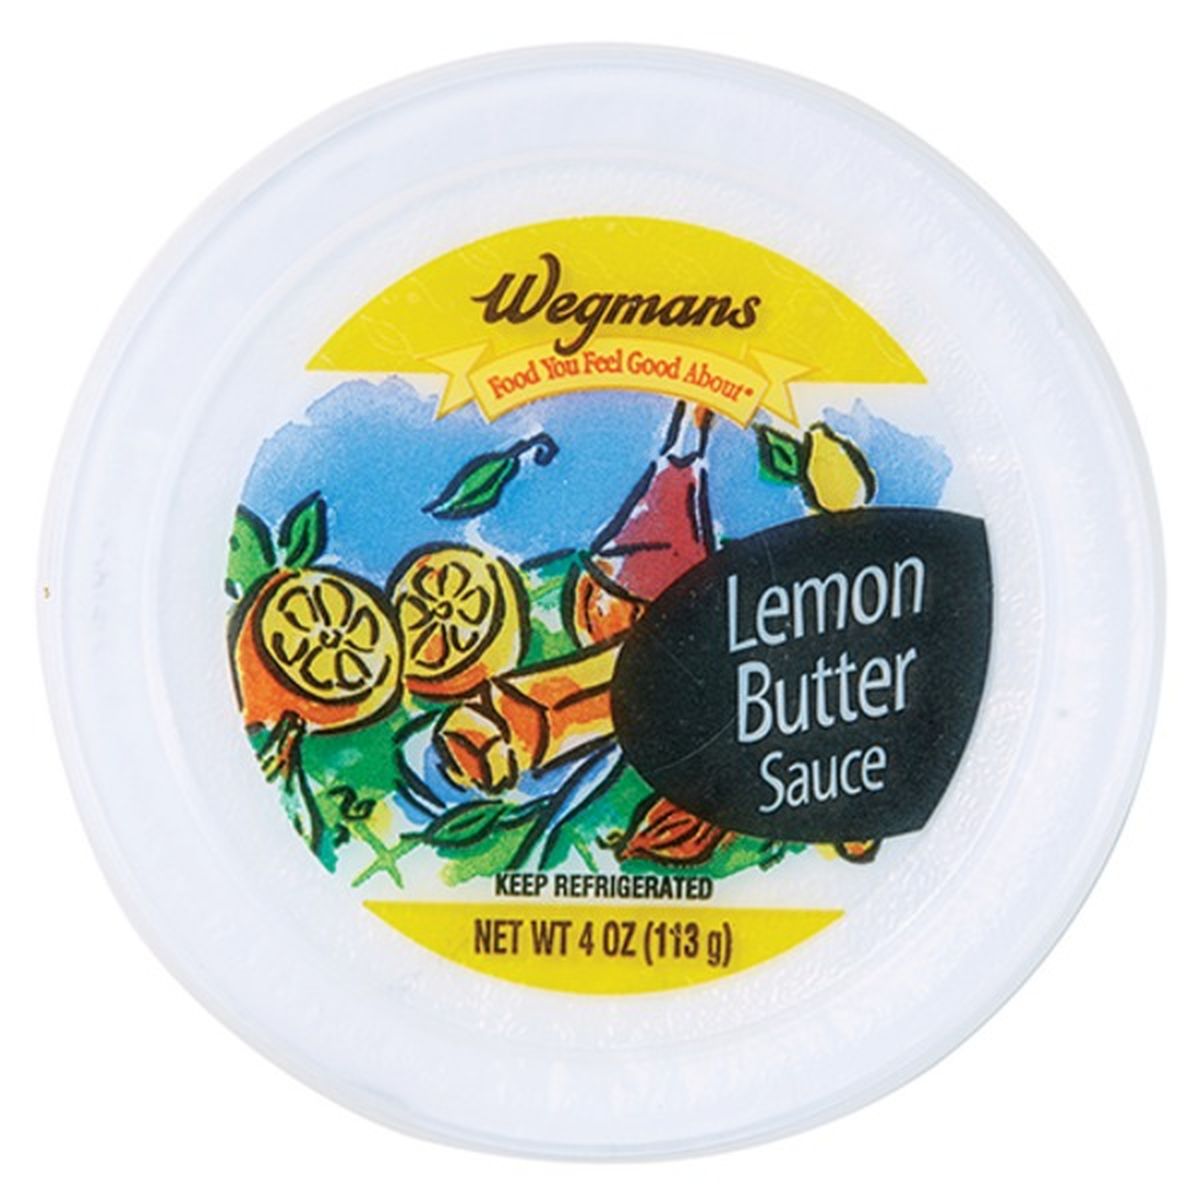 Calories in Wegmans Lemon Butter Sauce